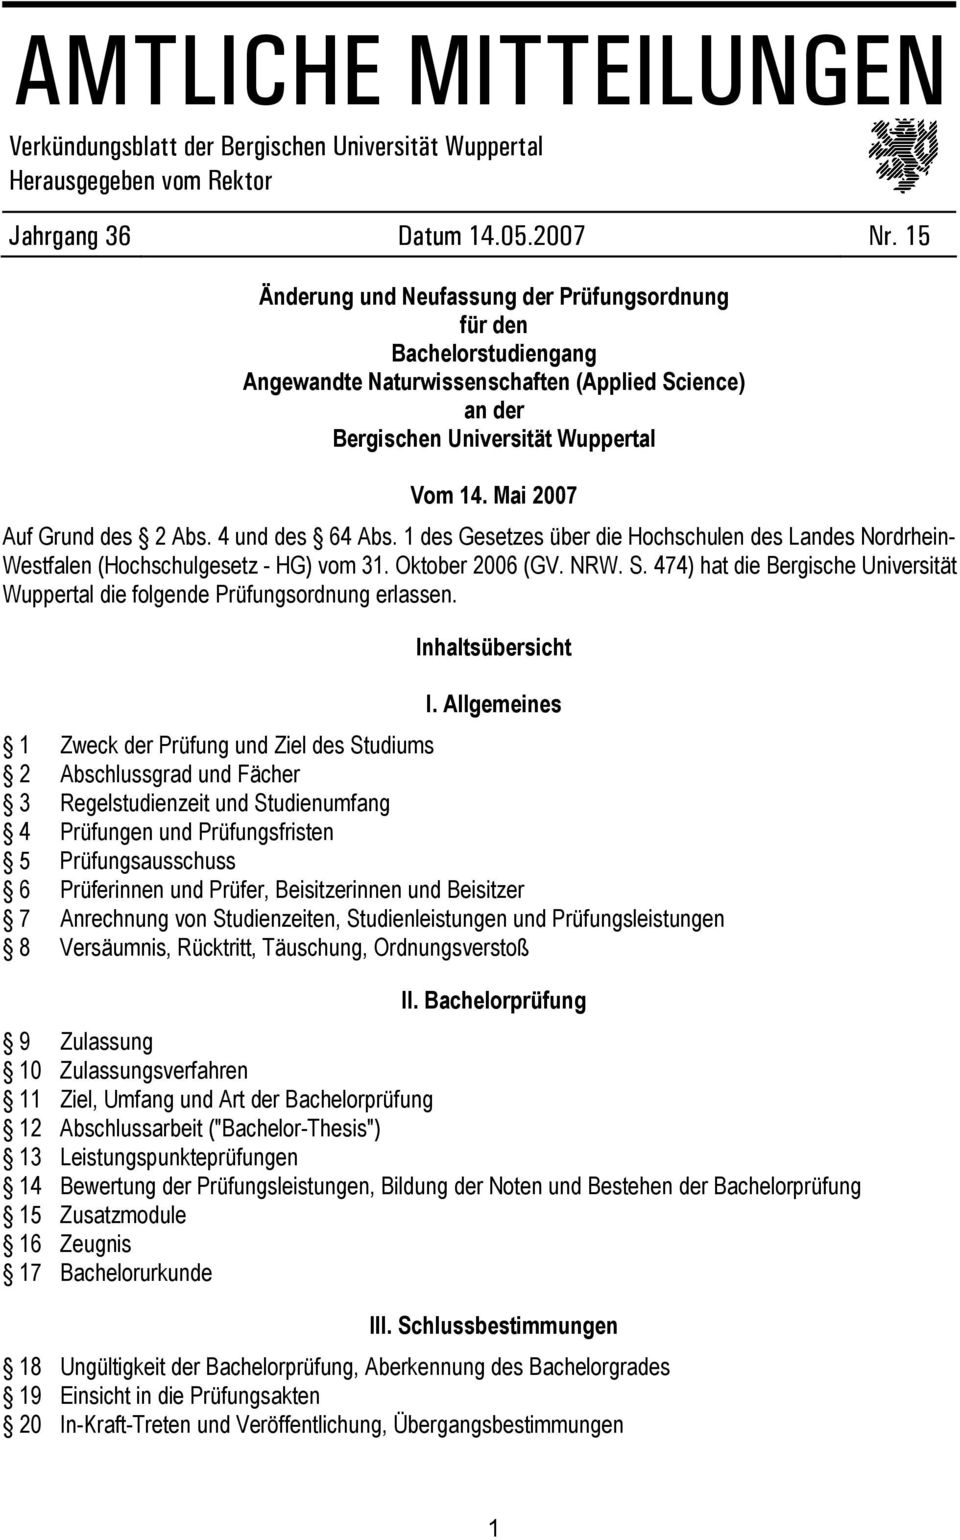 und des Abs. 1 des Gesetzes über die Hochschulen des Landes Nordrhein- Westfalen (Hochschulgesetz - HG) vom 31. Oktober 200 (GV. NRW. S.